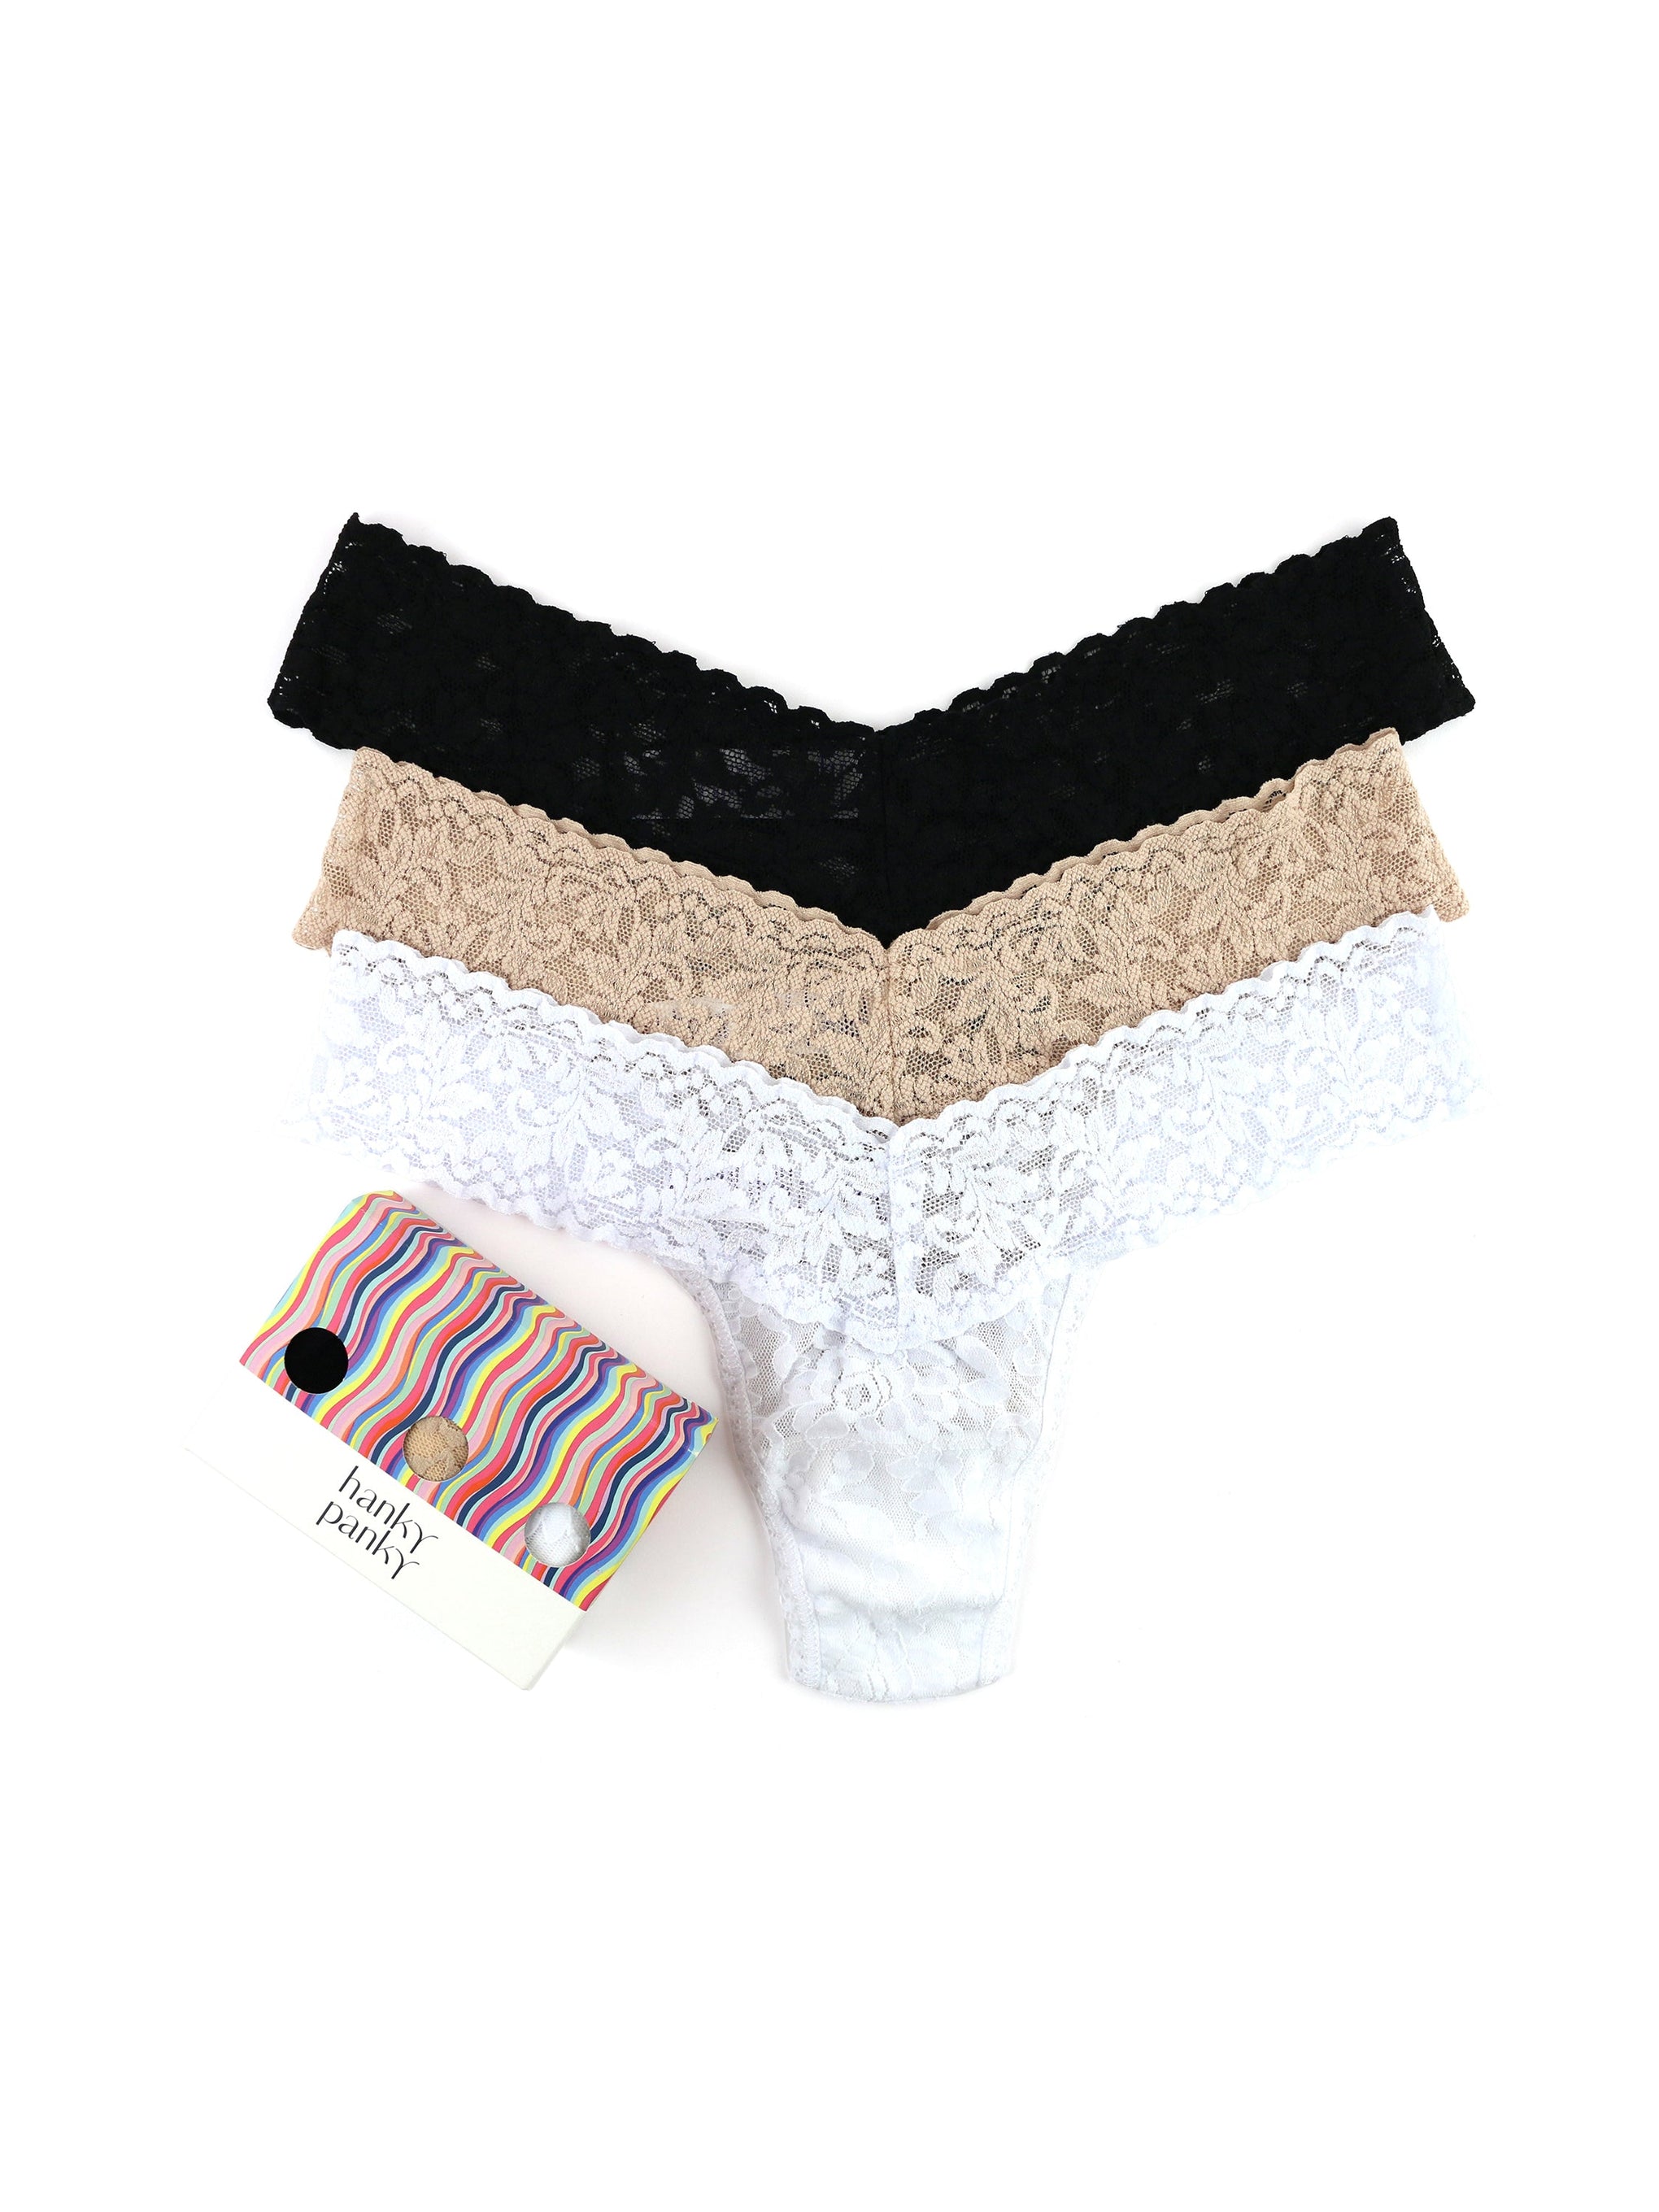 Secret Treasures Women's Lace Thong Panties, 6-Pack 